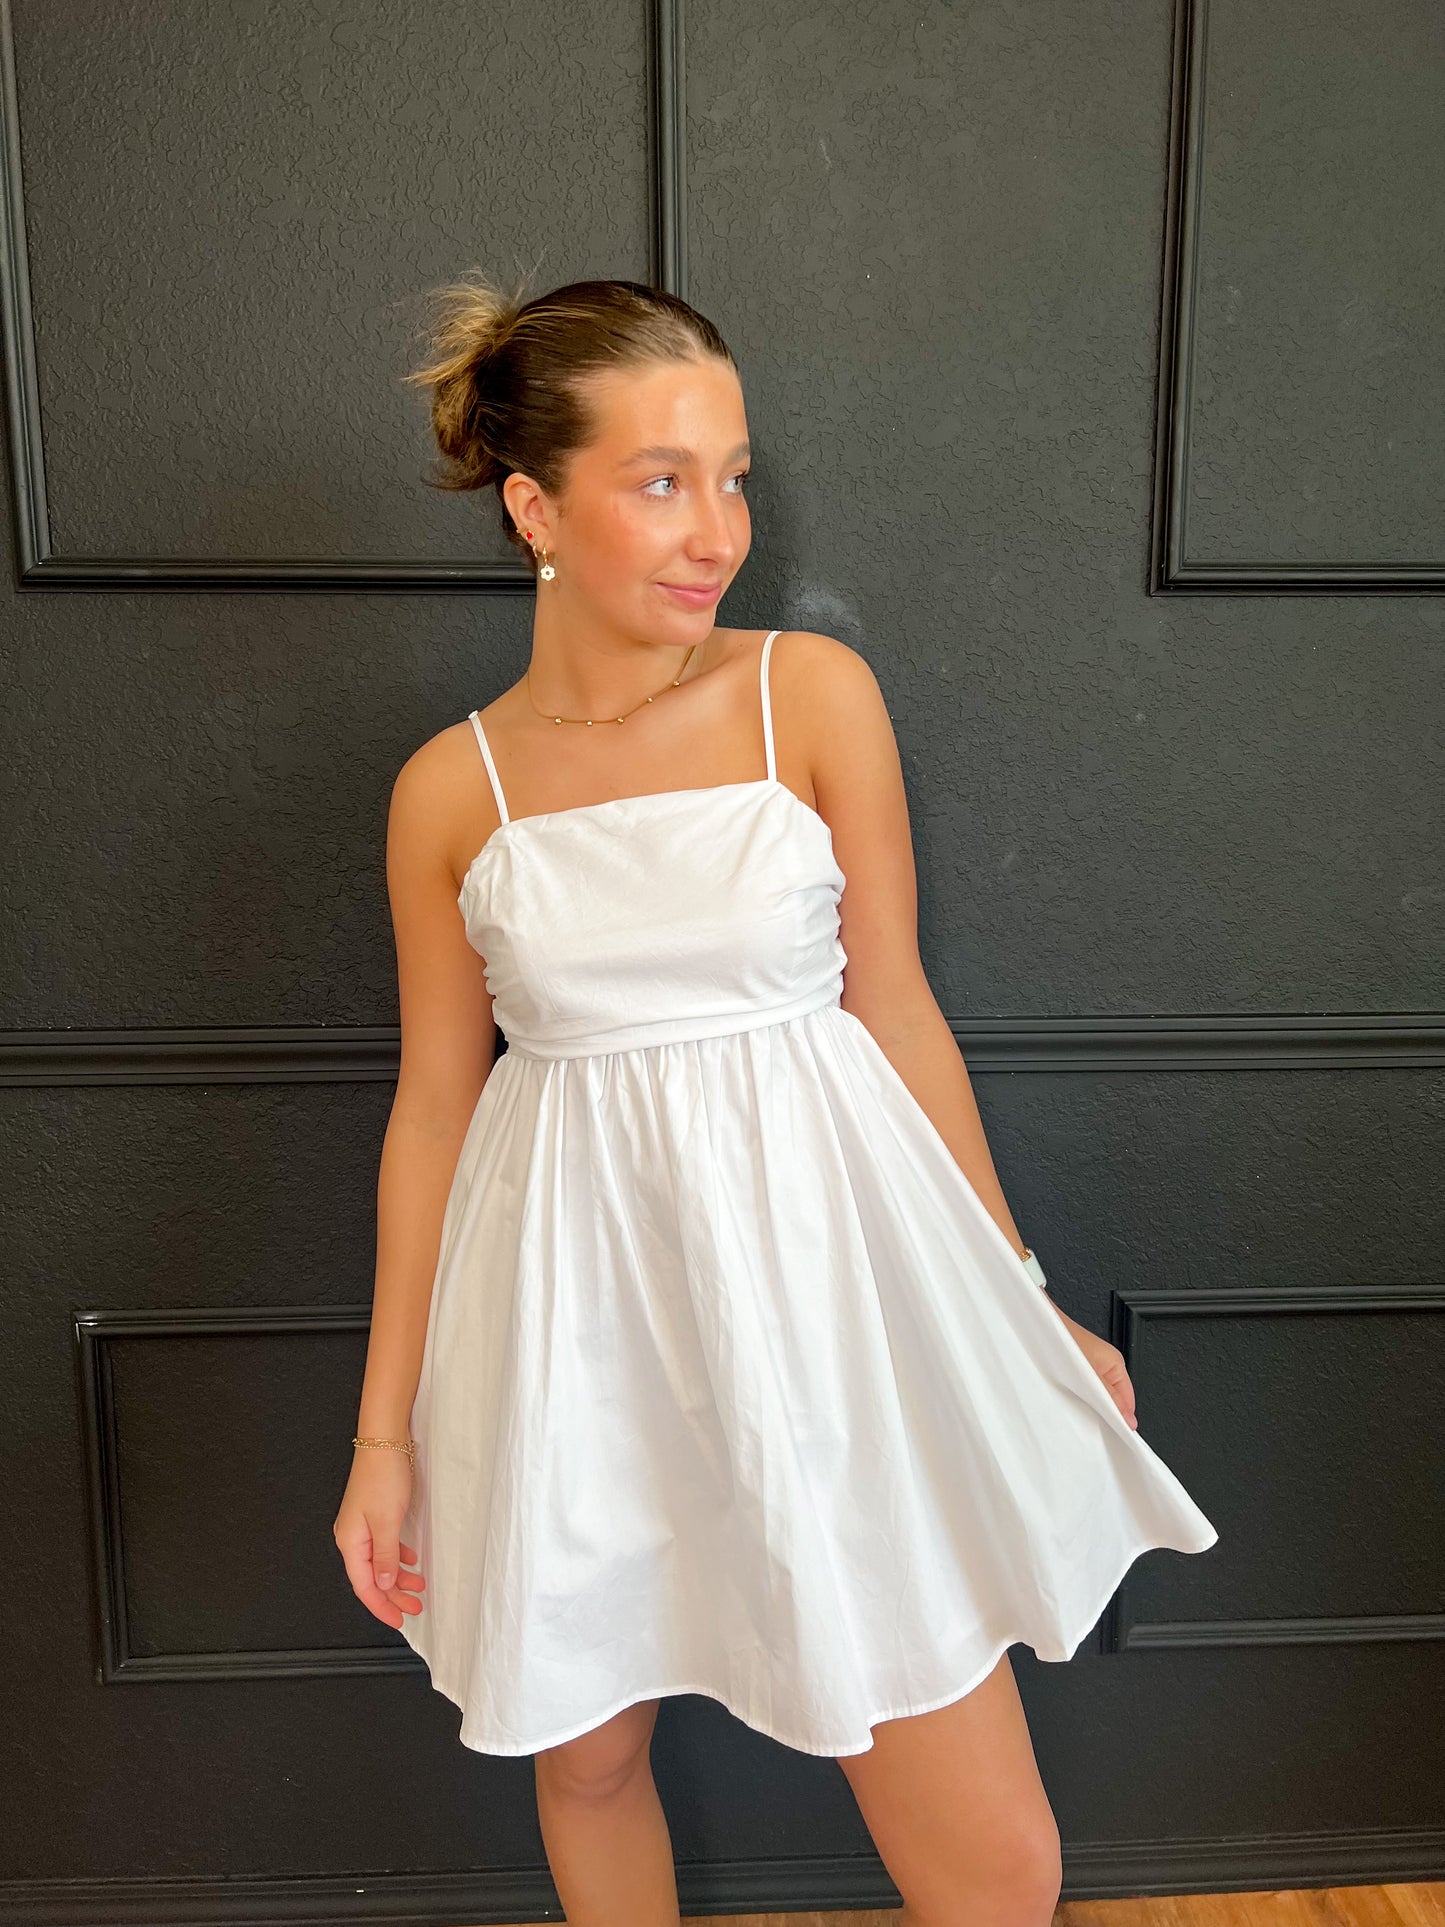 Gifted Mini Dress - White